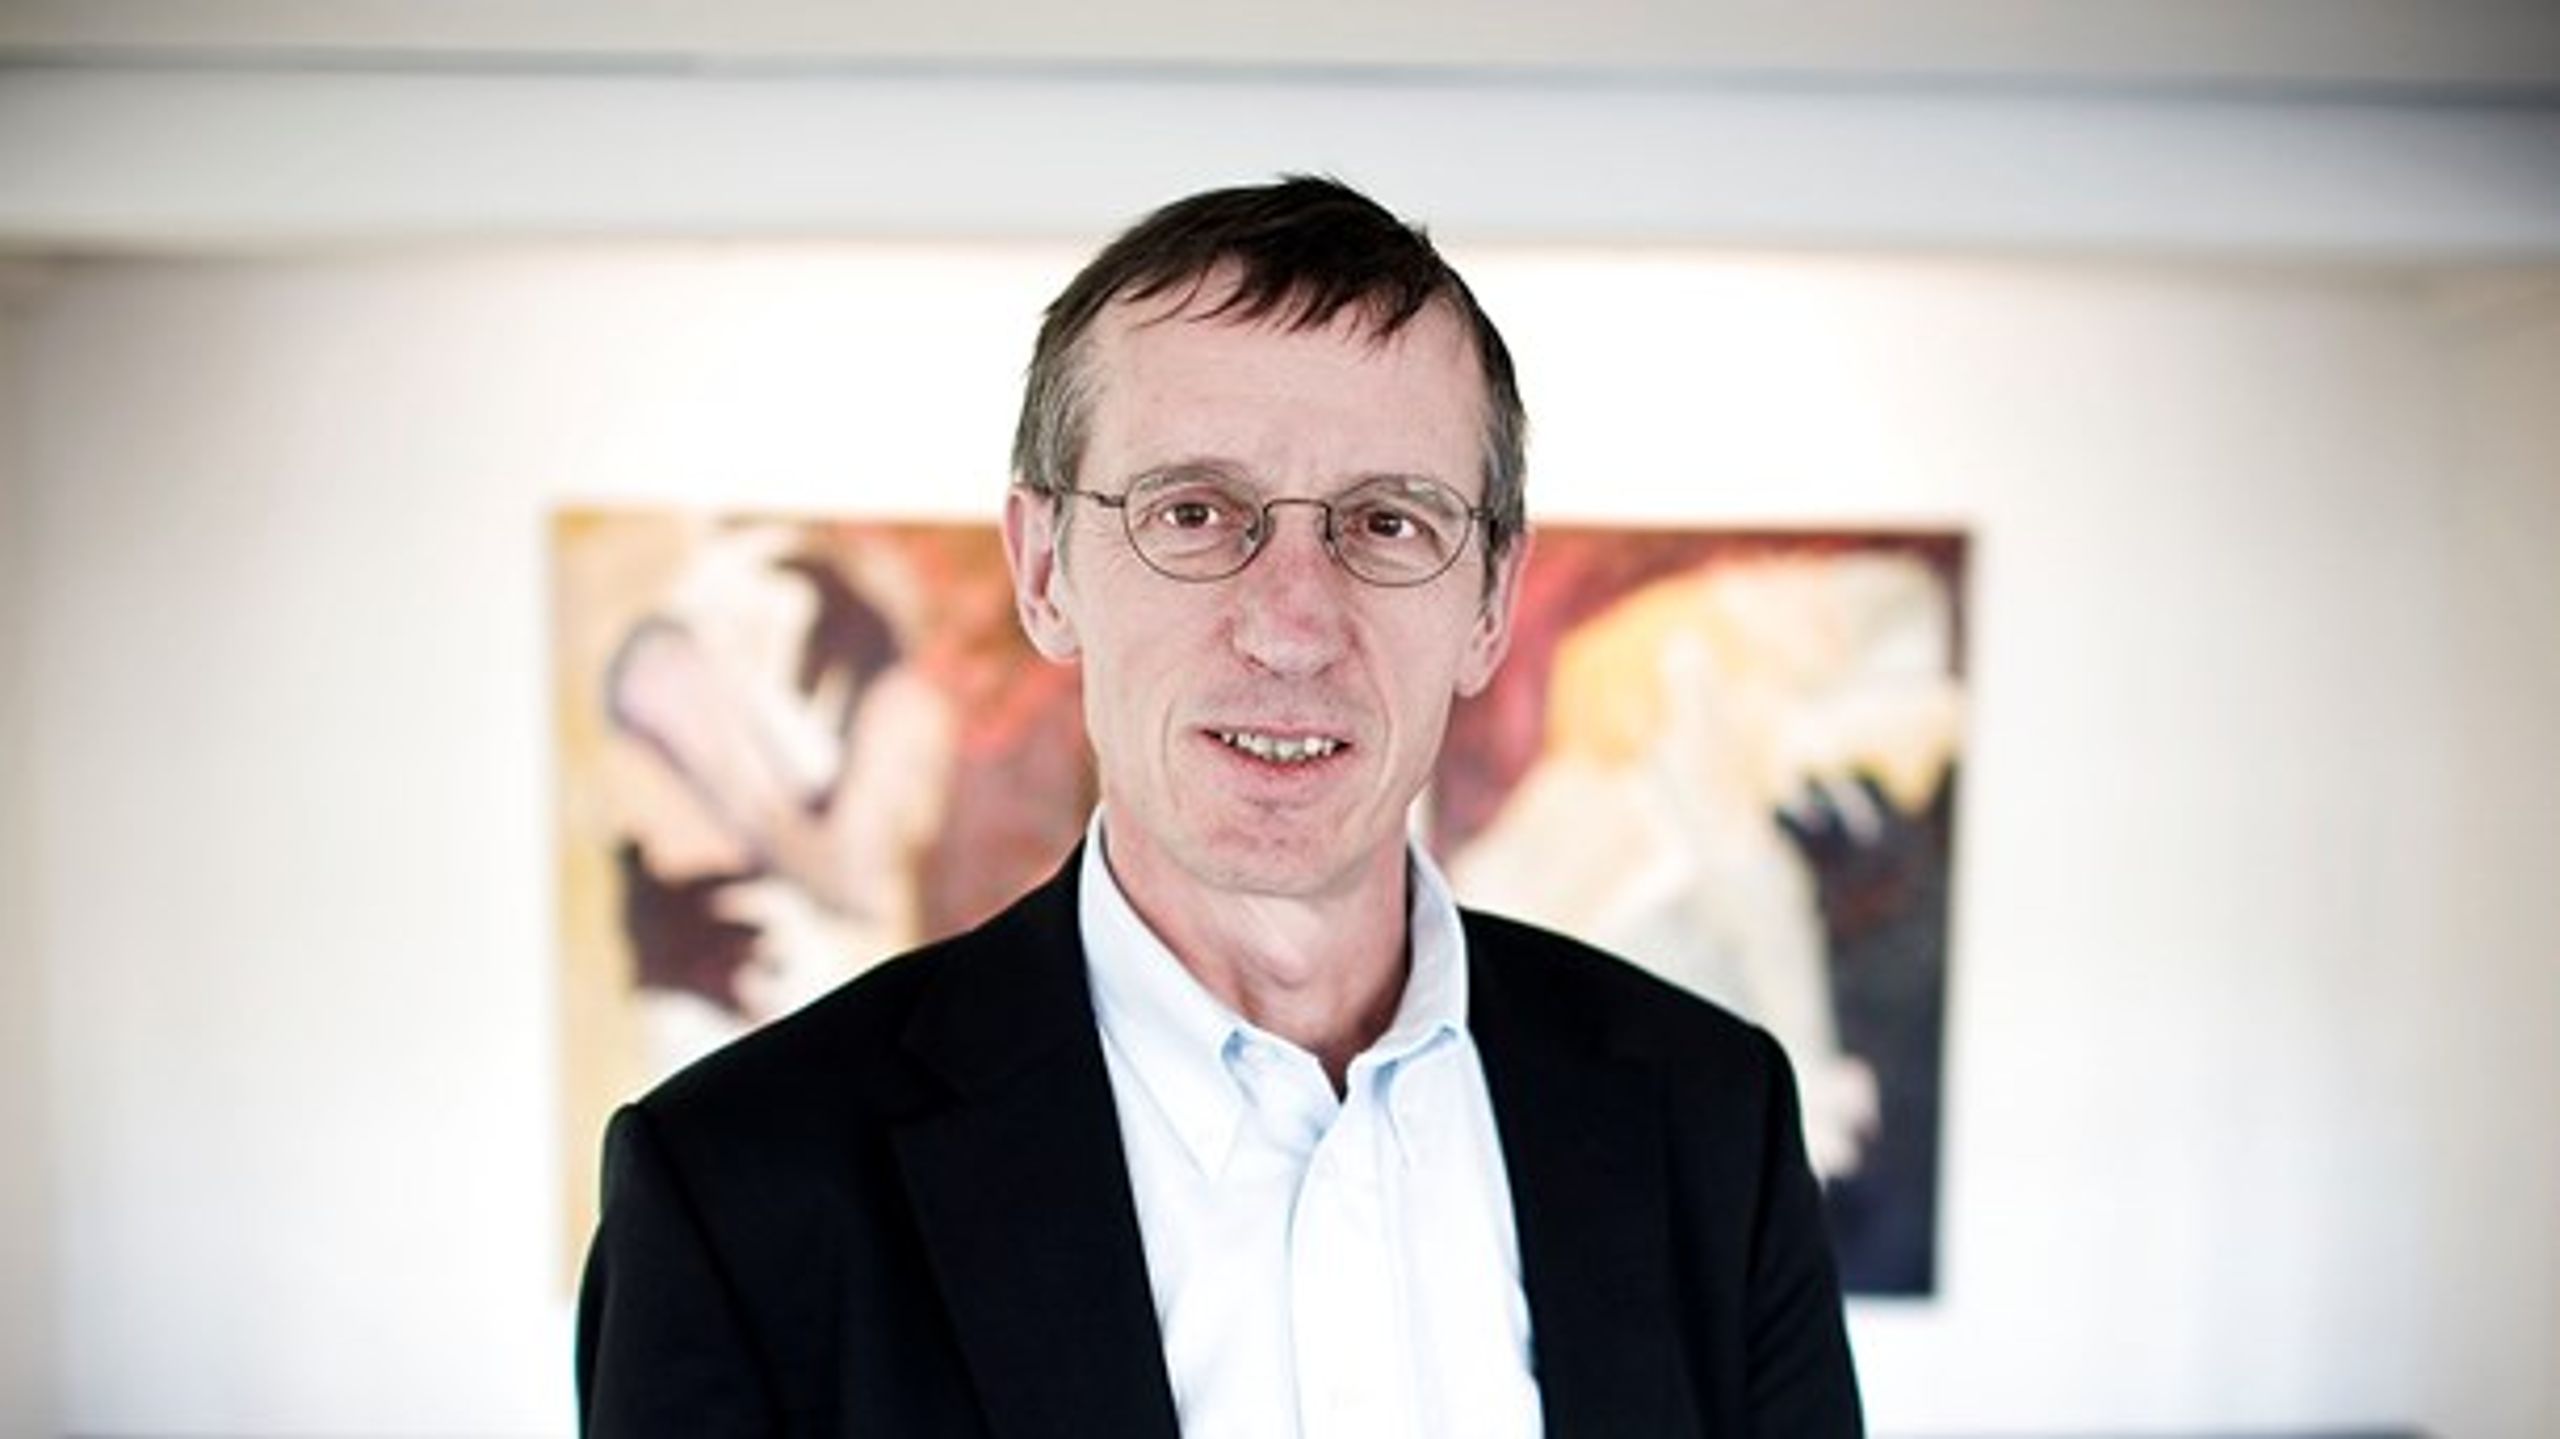 Professor og centerleder Lars Qvortrup&nbsp;kritiseres for at udelukke ny forskning i dagtilbud på baggrund af ideologiske forskningskriterier.